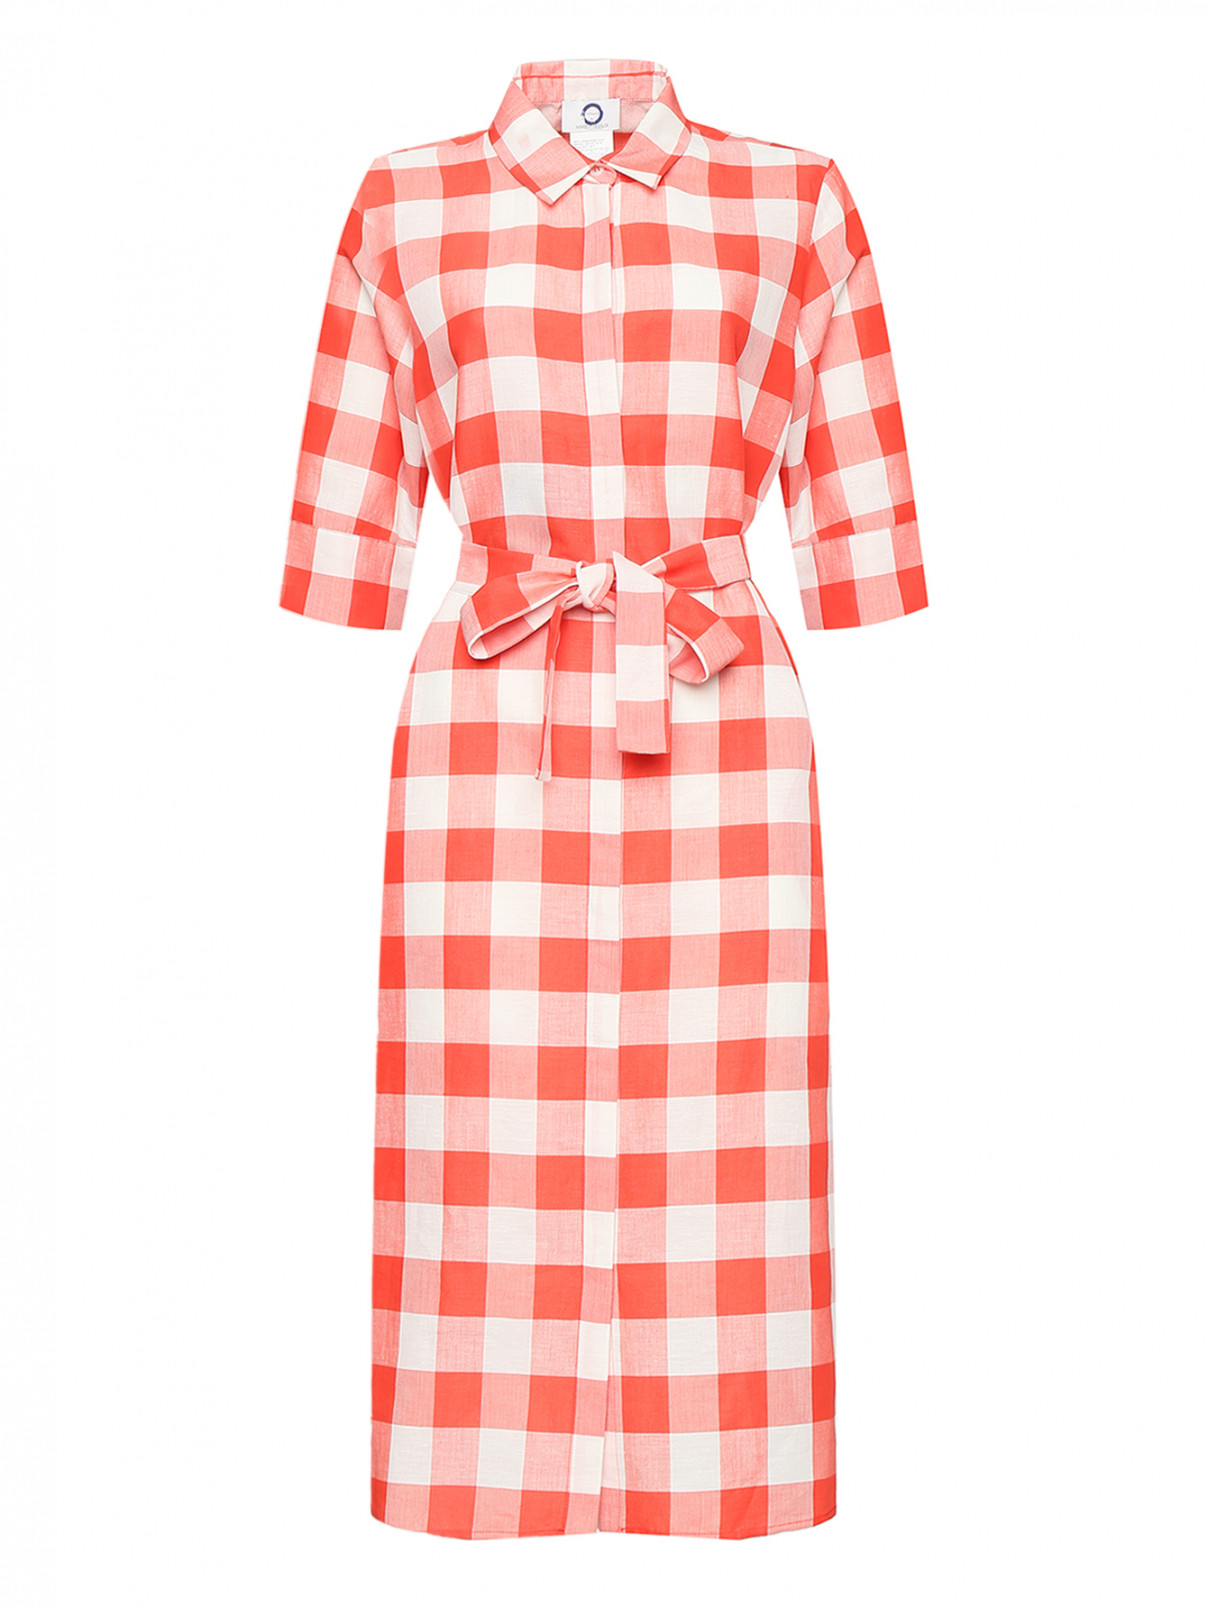 Платье из хлопка и льна с узором клетка Marina Rinaldi  –  Общий вид  – Цвет:  Красный